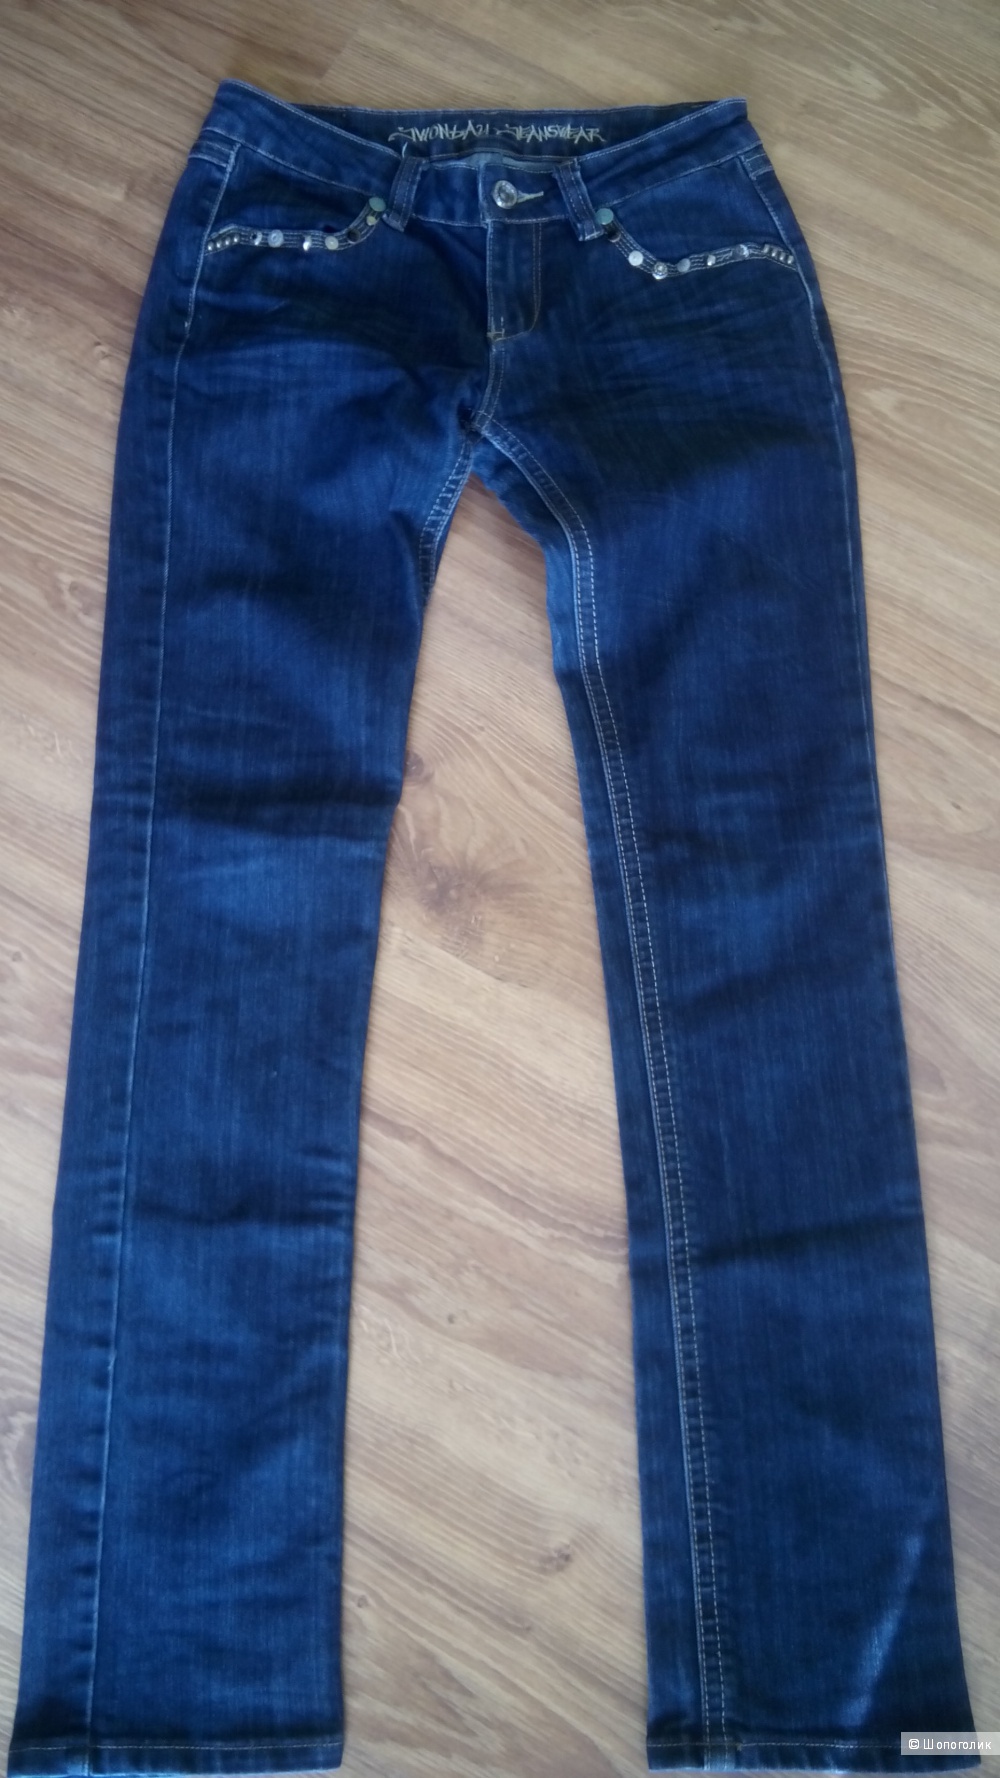 Красивые синие джинсы Monday, размер 38 европейский.